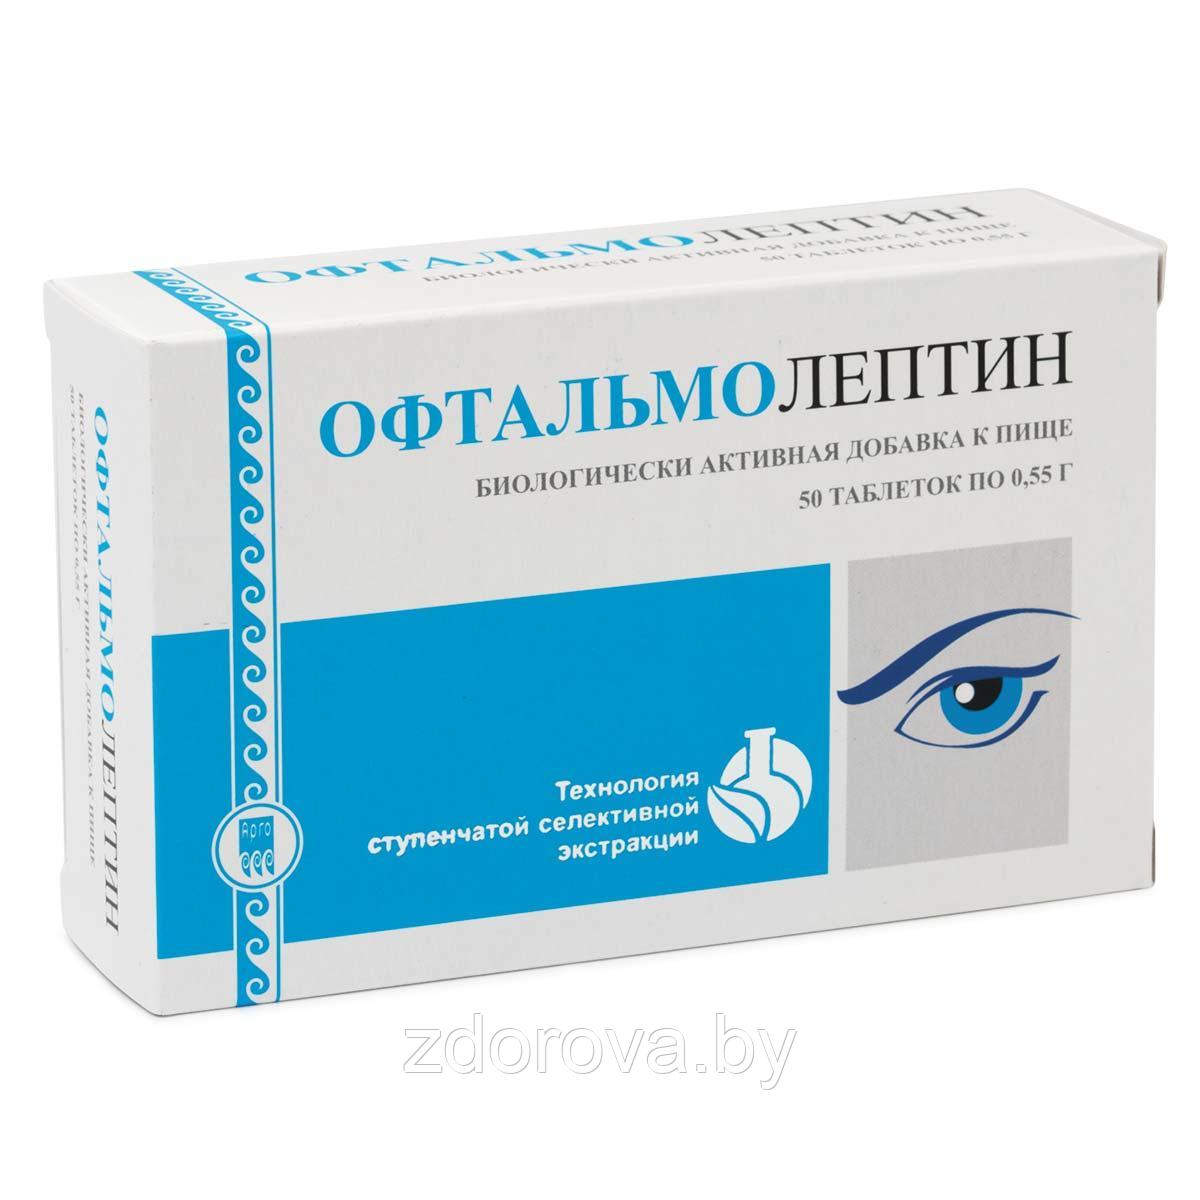 Офтальмолептин, 50 таб. (Способствует улучшению зрения)